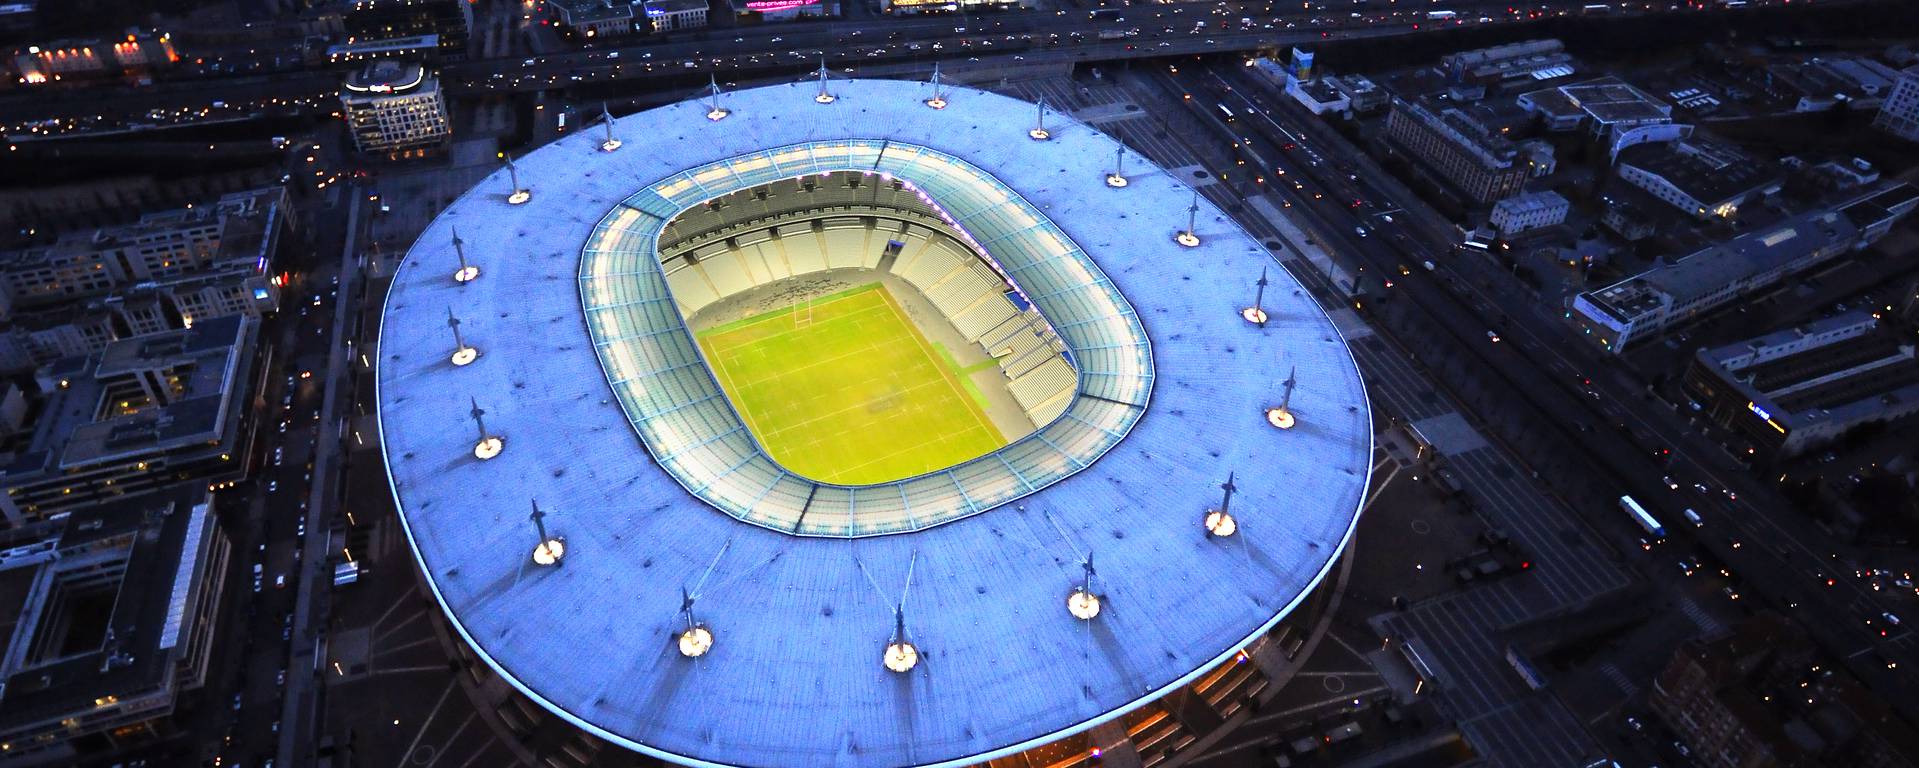 Contre la Colombie le Stade de France fera le plein ! - Sport.fr1919 x 768